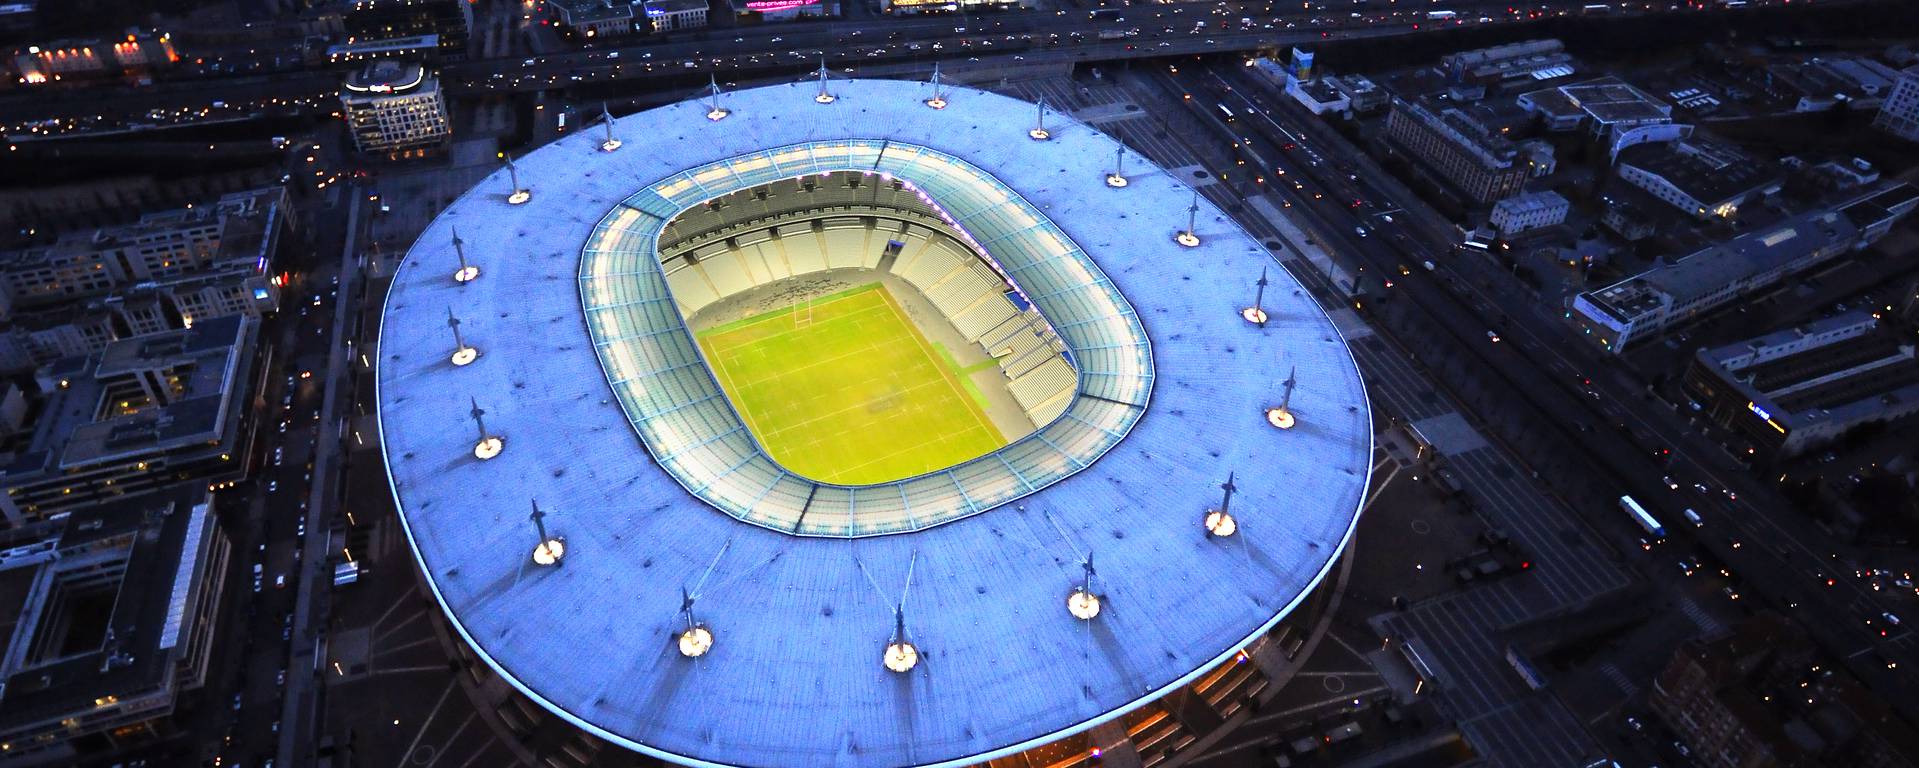 Contre la Colombie le Stade de France fera le plein ! - Sport.fr1919 x 768